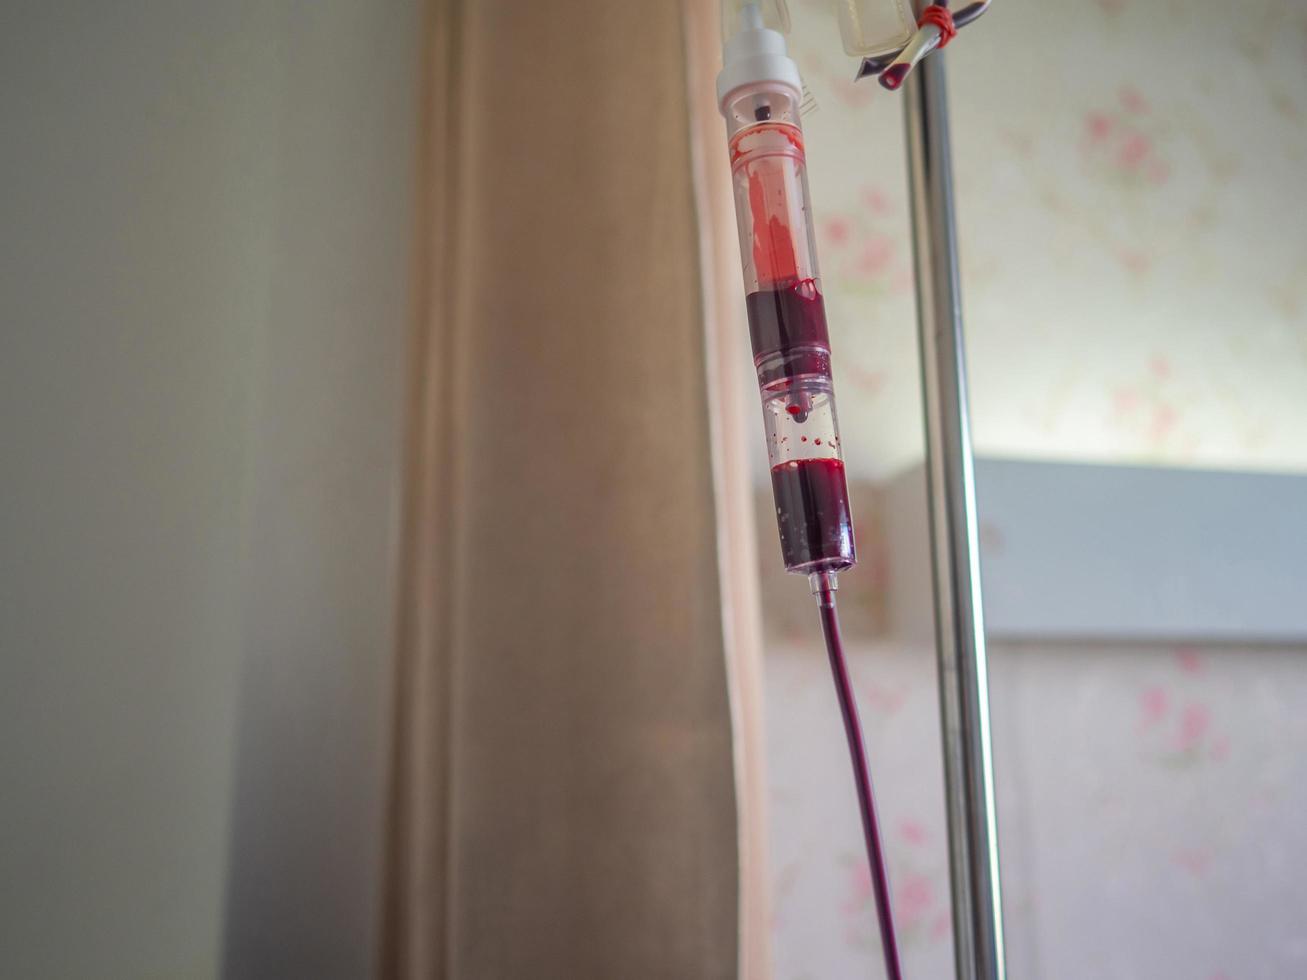 Blutbeutel für Patienten zur Behandlung von Anämie, die im Patientenzimmer im Krankenhaus hängen foto